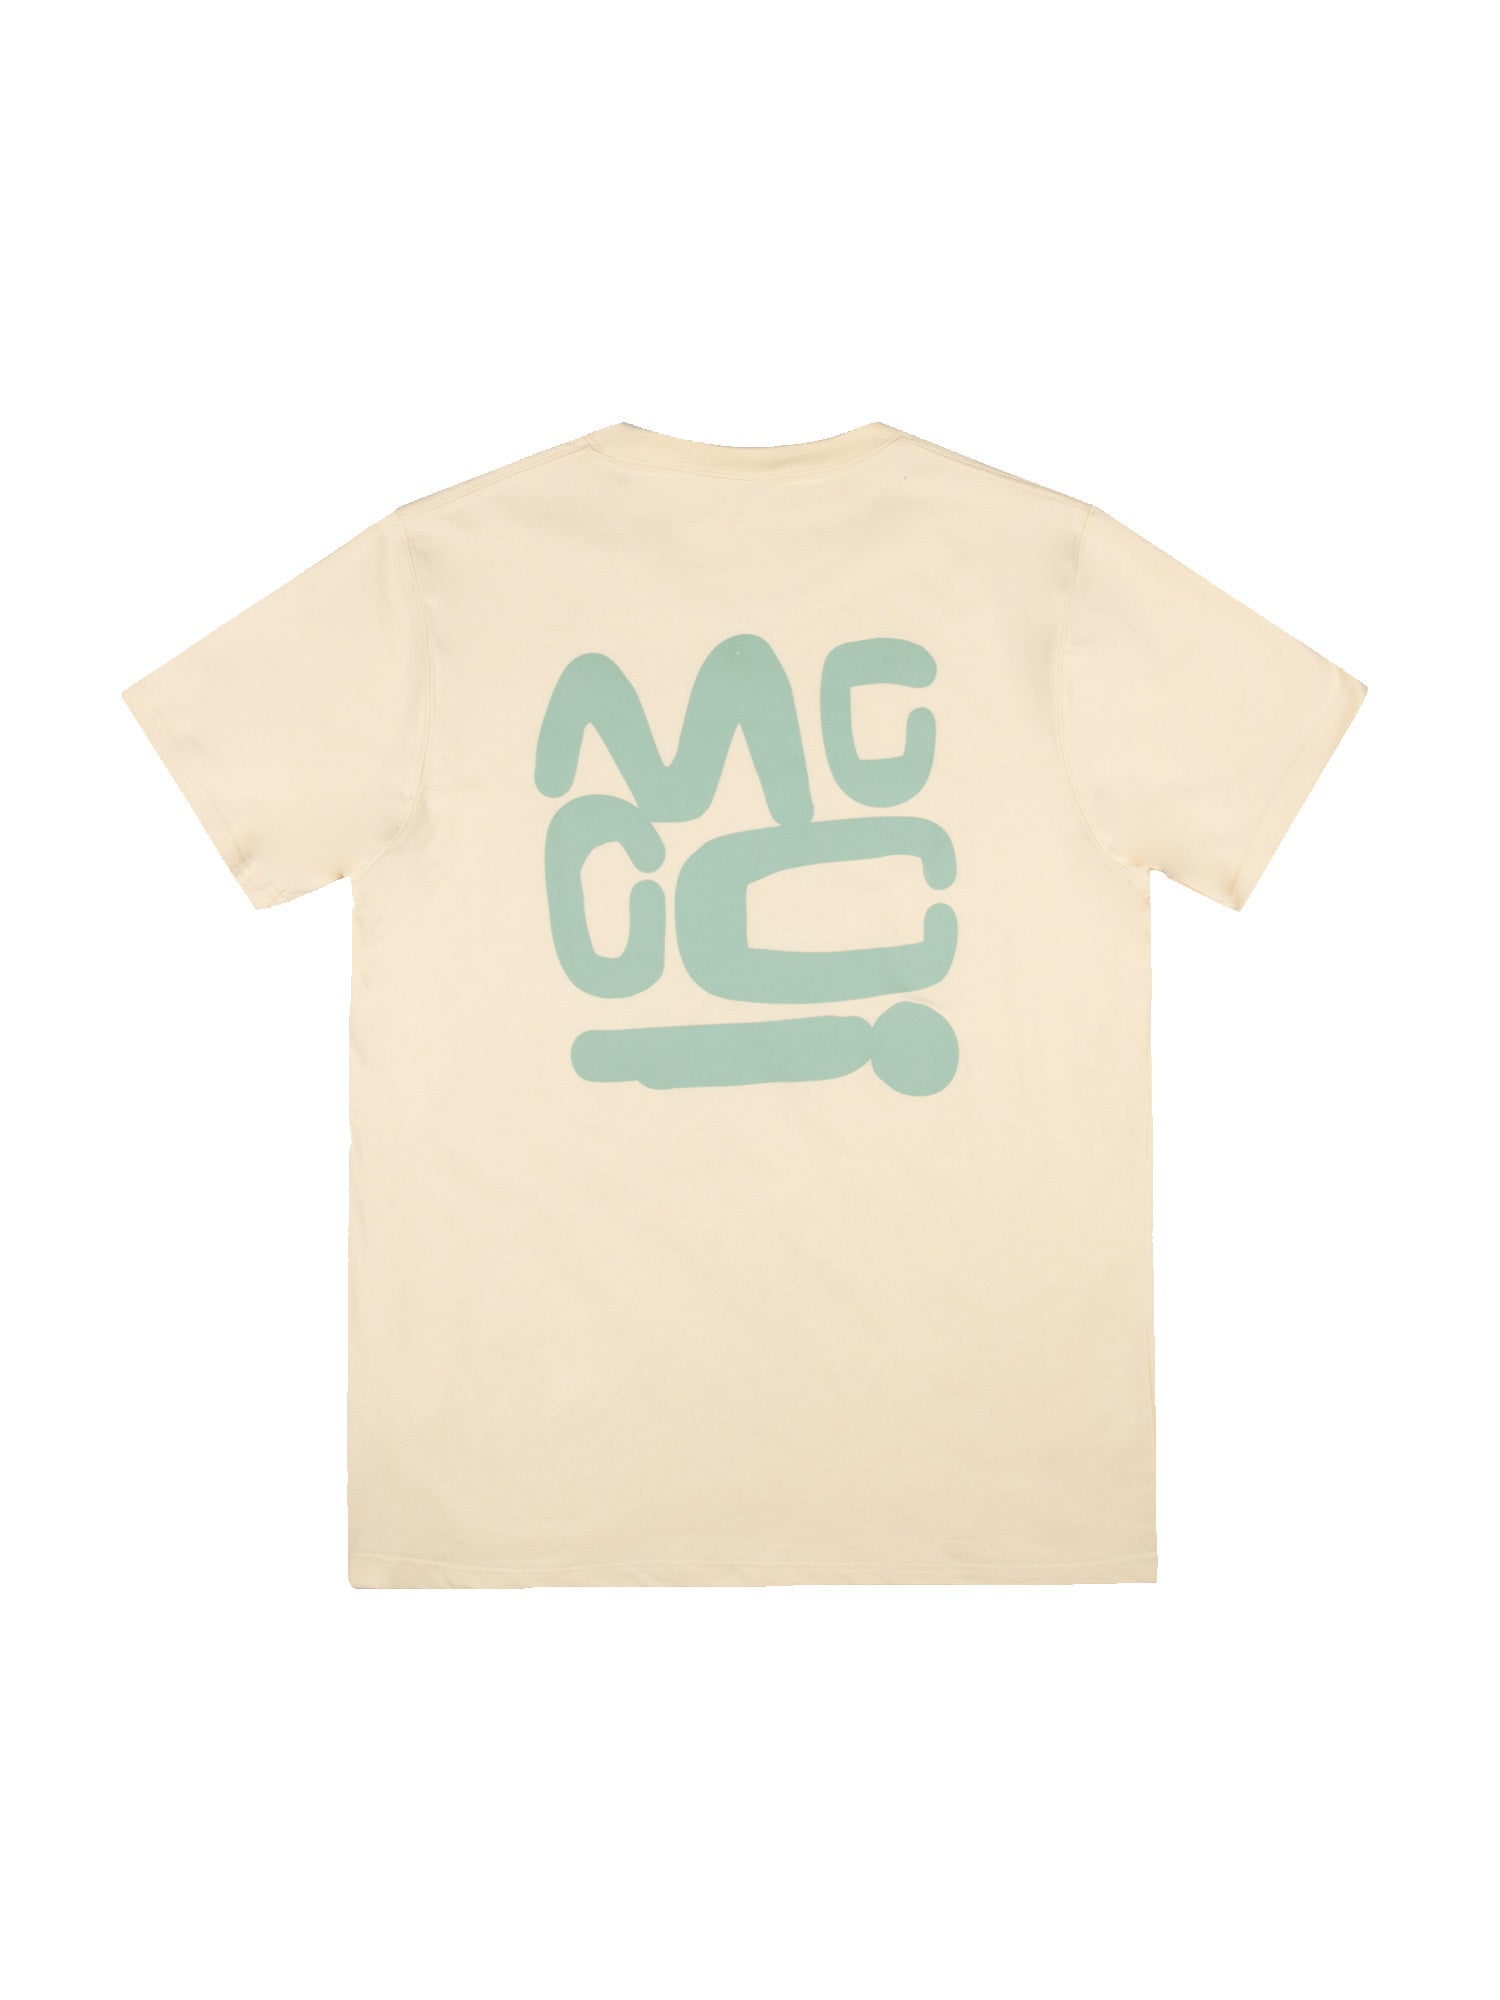 Asher - Graphic T-Shirt - Cream